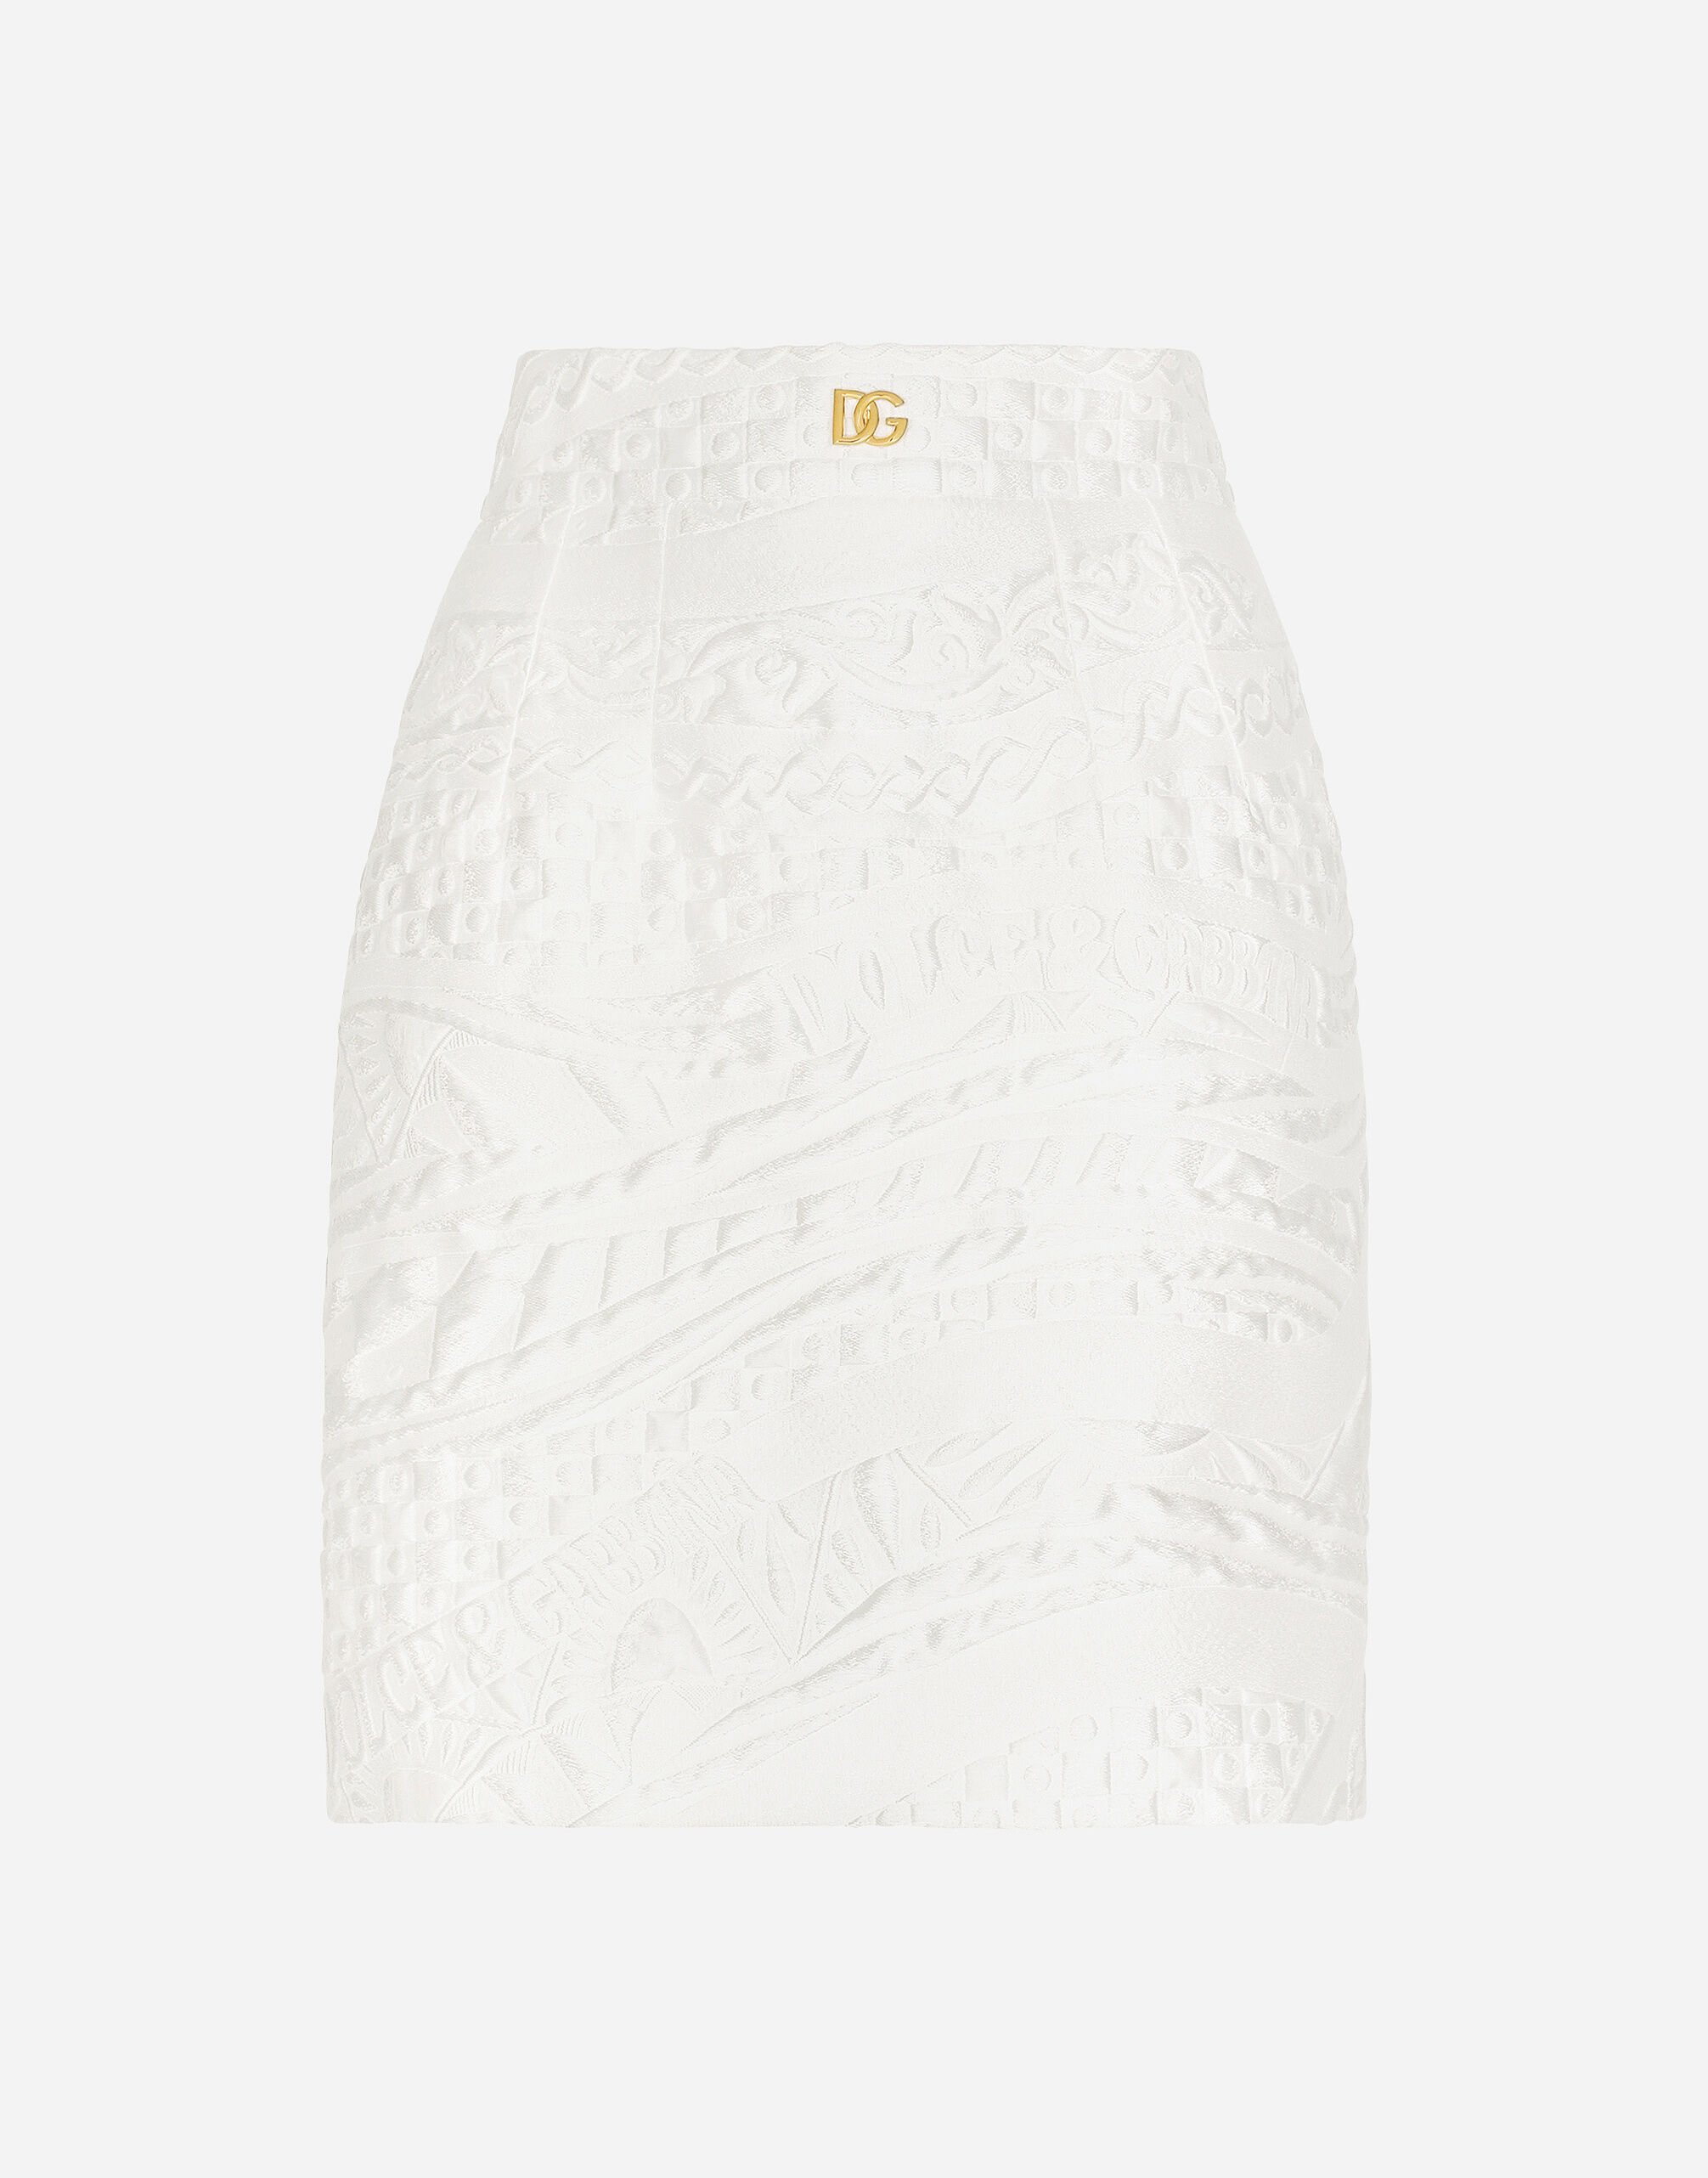 Dolce & Gabbana Short brocade skirt with DG logo Print F4CUNTFPTAX